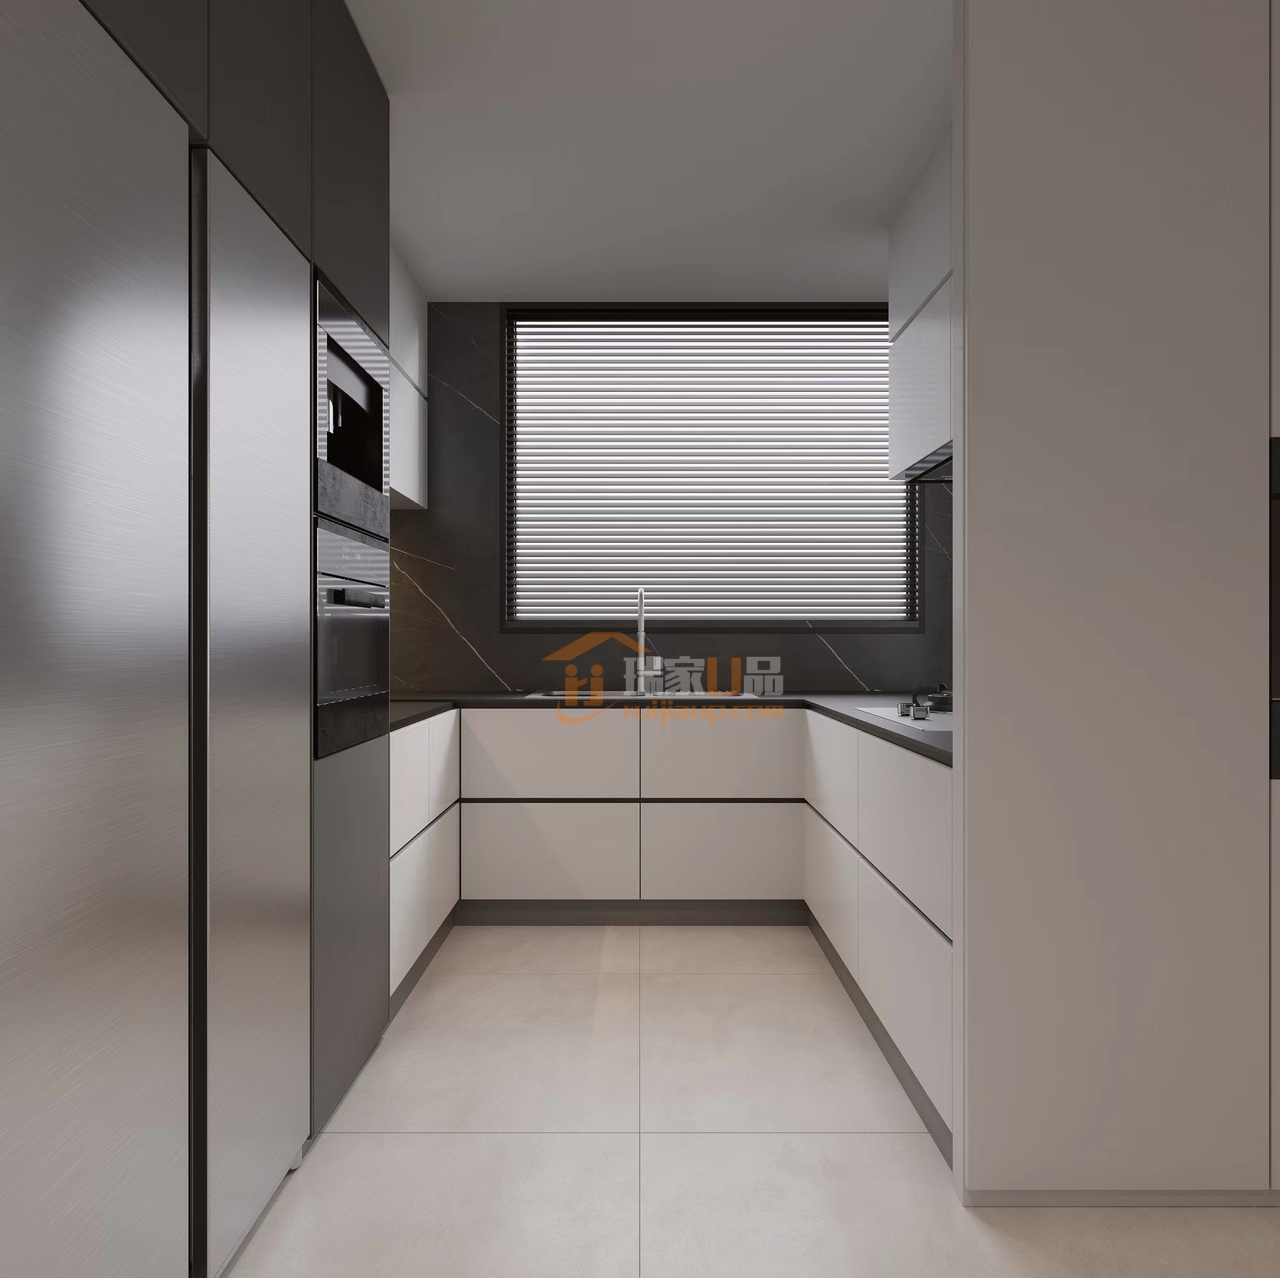 厨房的线条清晰有力，百扇窗利用不同时段的自然光，赋予厨房丰富的光影表达。设计师运用沿墙排列的橱柜，与高柜之间的间隙设置层板，让整个空间得到了充分的利用。